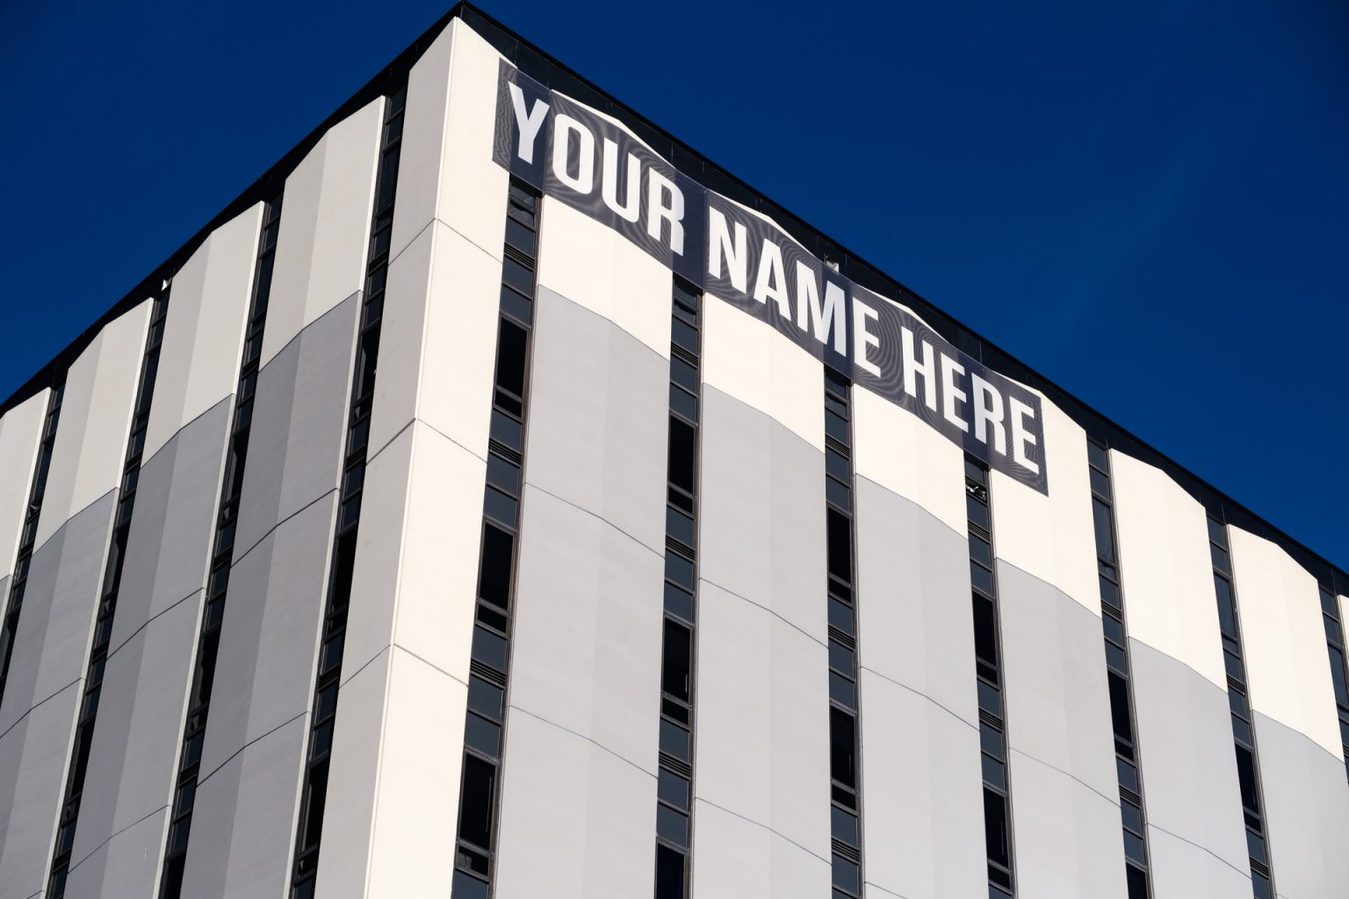 Edificio con letrero de "tu nombre aquí" en la parte superior